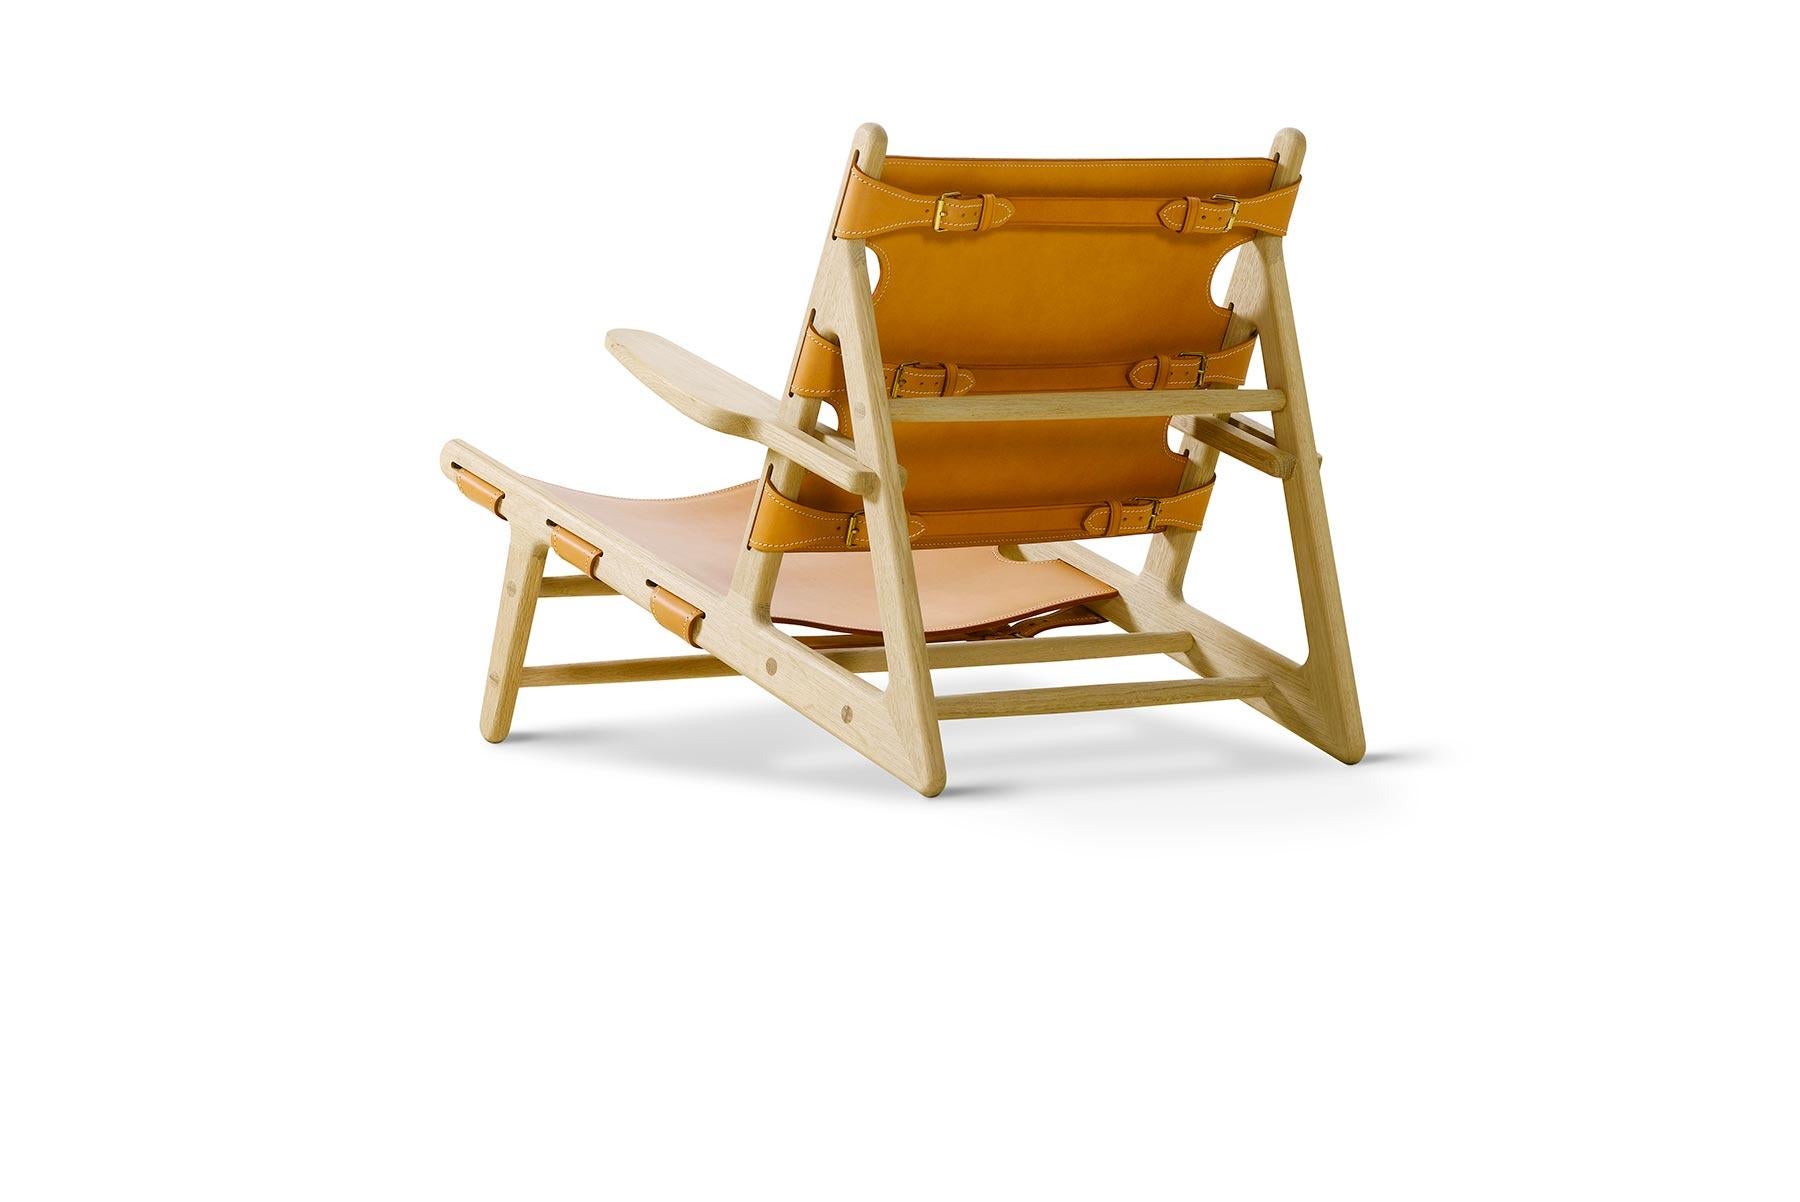 Der 1950 entworfene Stuhl The Hunting war Mogensens erstes Werk mit freiliegendem Holzrahmen und Sattelleder. Der Sitz ist mit massiven Messingschnallen verstellbar, und der Stuhl lässt sich leicht an verschiedene Orte in der Wohnung versetzen.